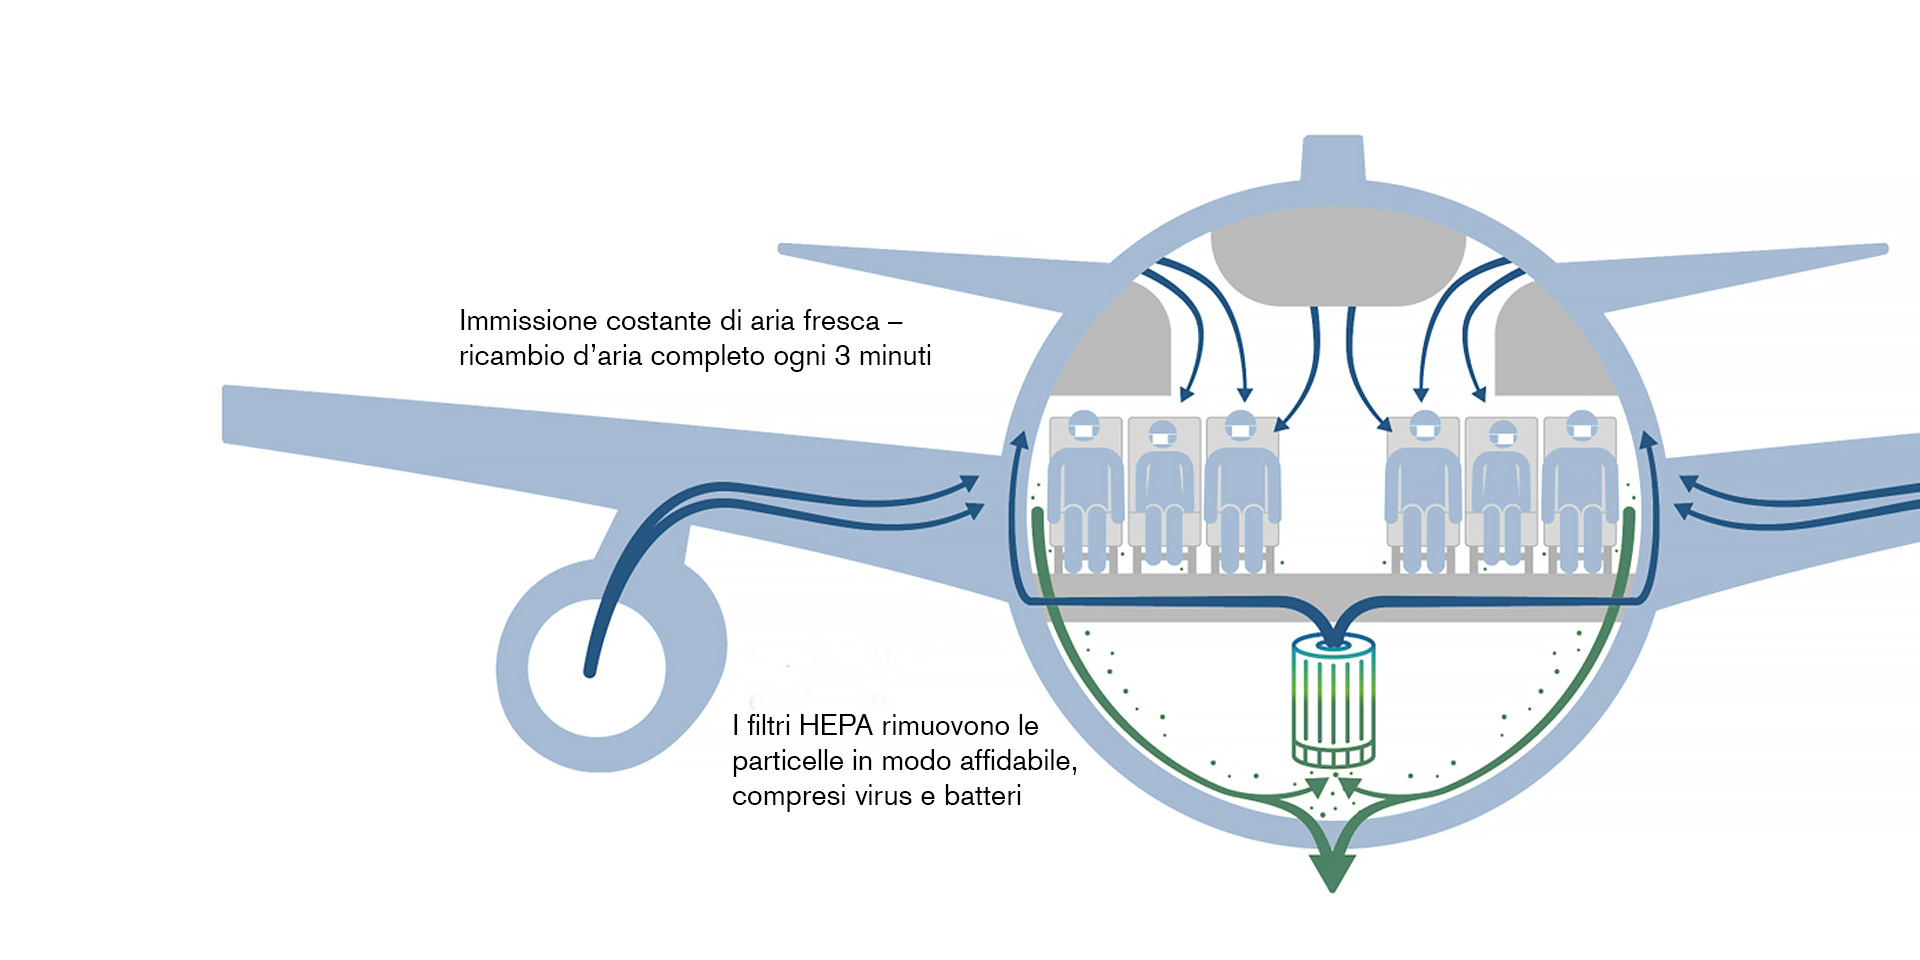 Figura 3: come circola l'aria in aereo. Immissione costante di aria fresca – ricambio d’aria completo ogni 3 minuti. I filtri HEPA rimuovono le particelle in modo affidabile, compresi virus e batteri.